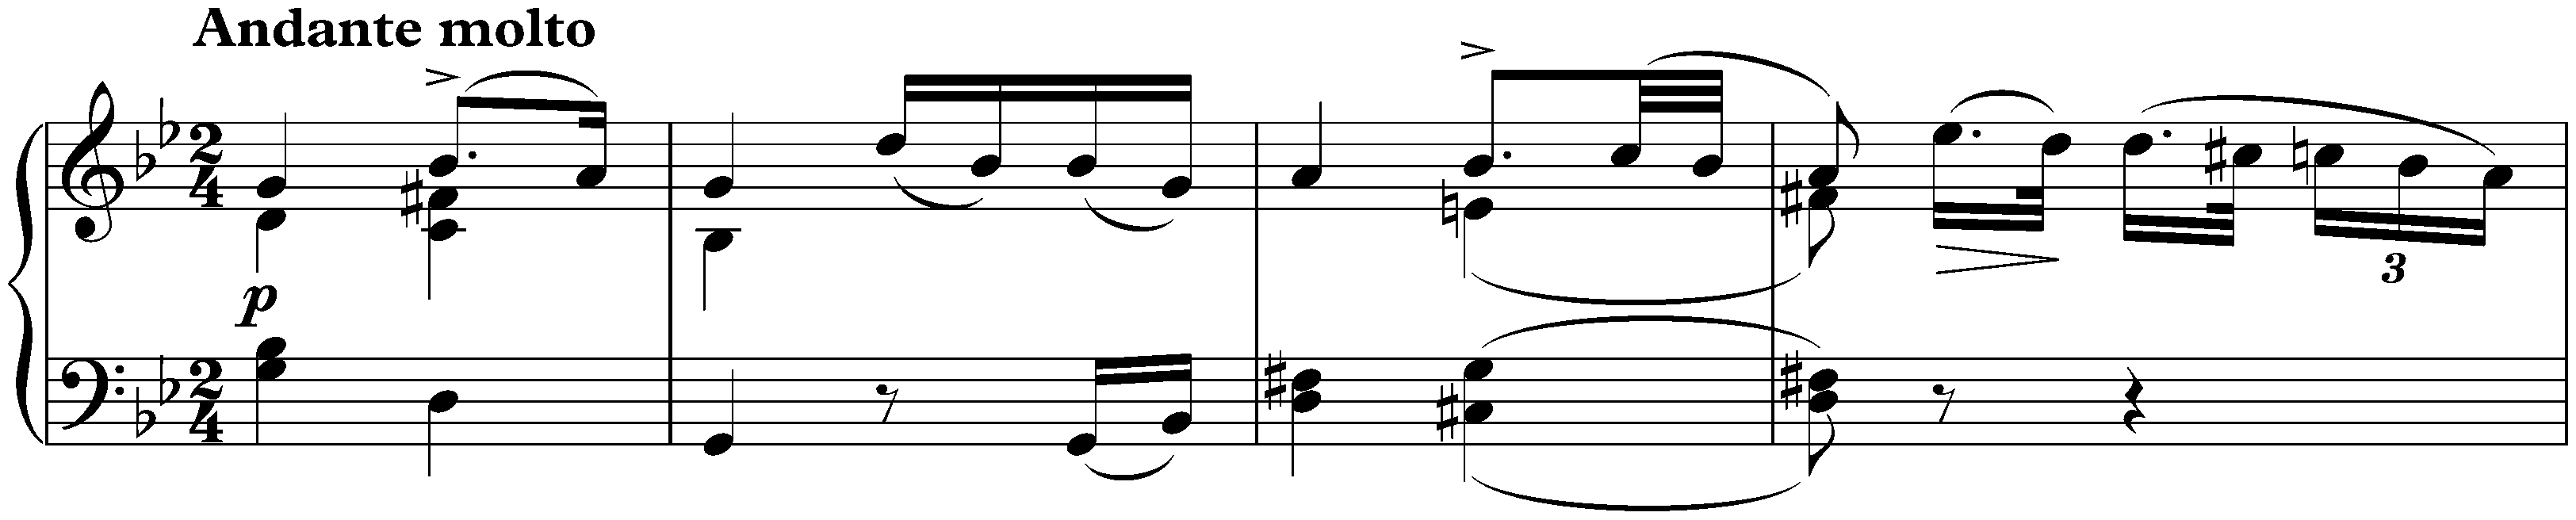 Sonata in E-flat major, D 568; 2. Andante molto